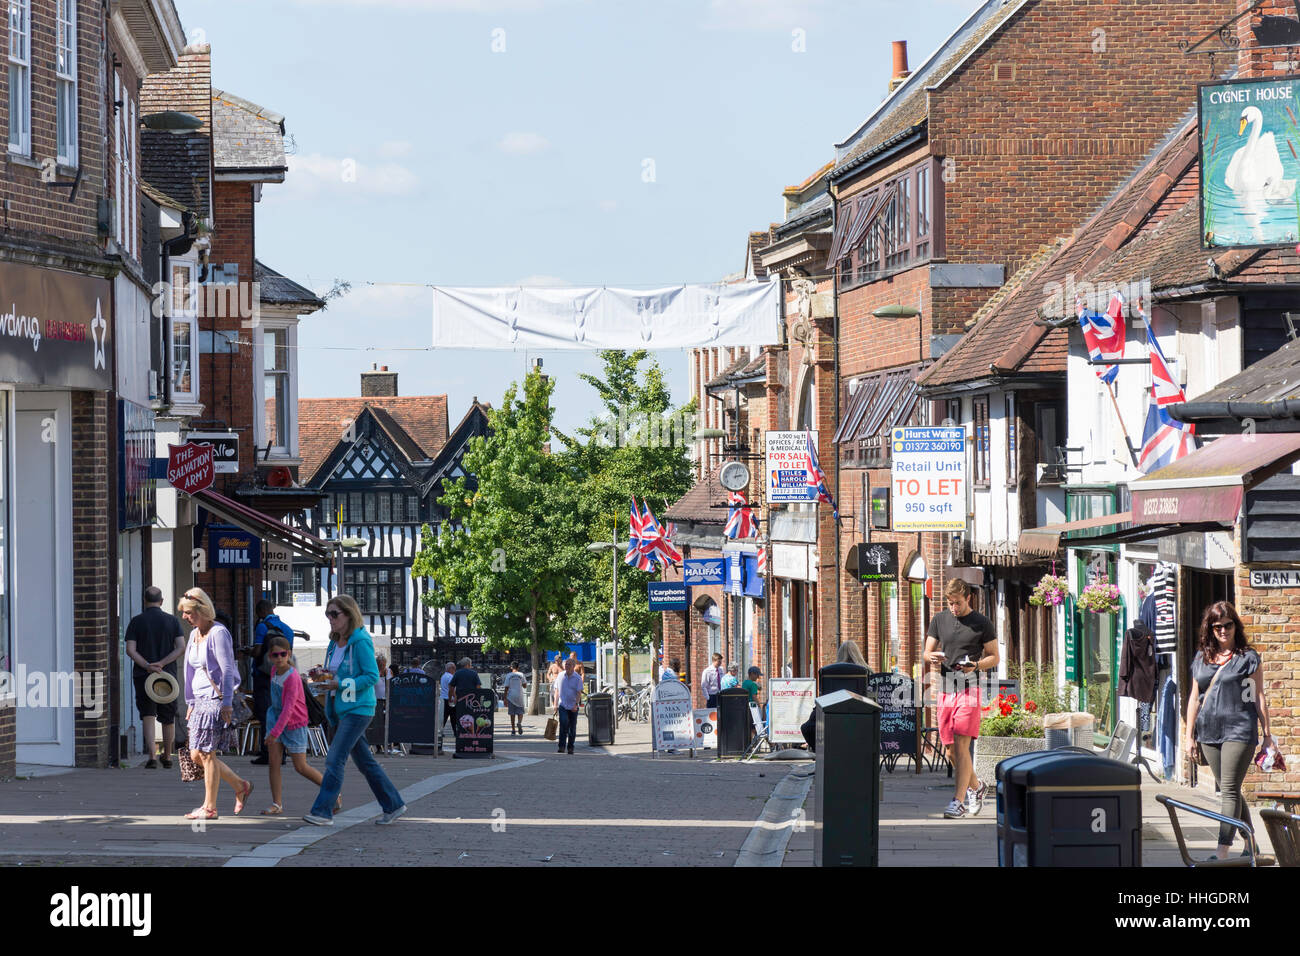 Pedestrianised High Street, Leatherhead, Surrey, England, United Kingdom Stock Photo